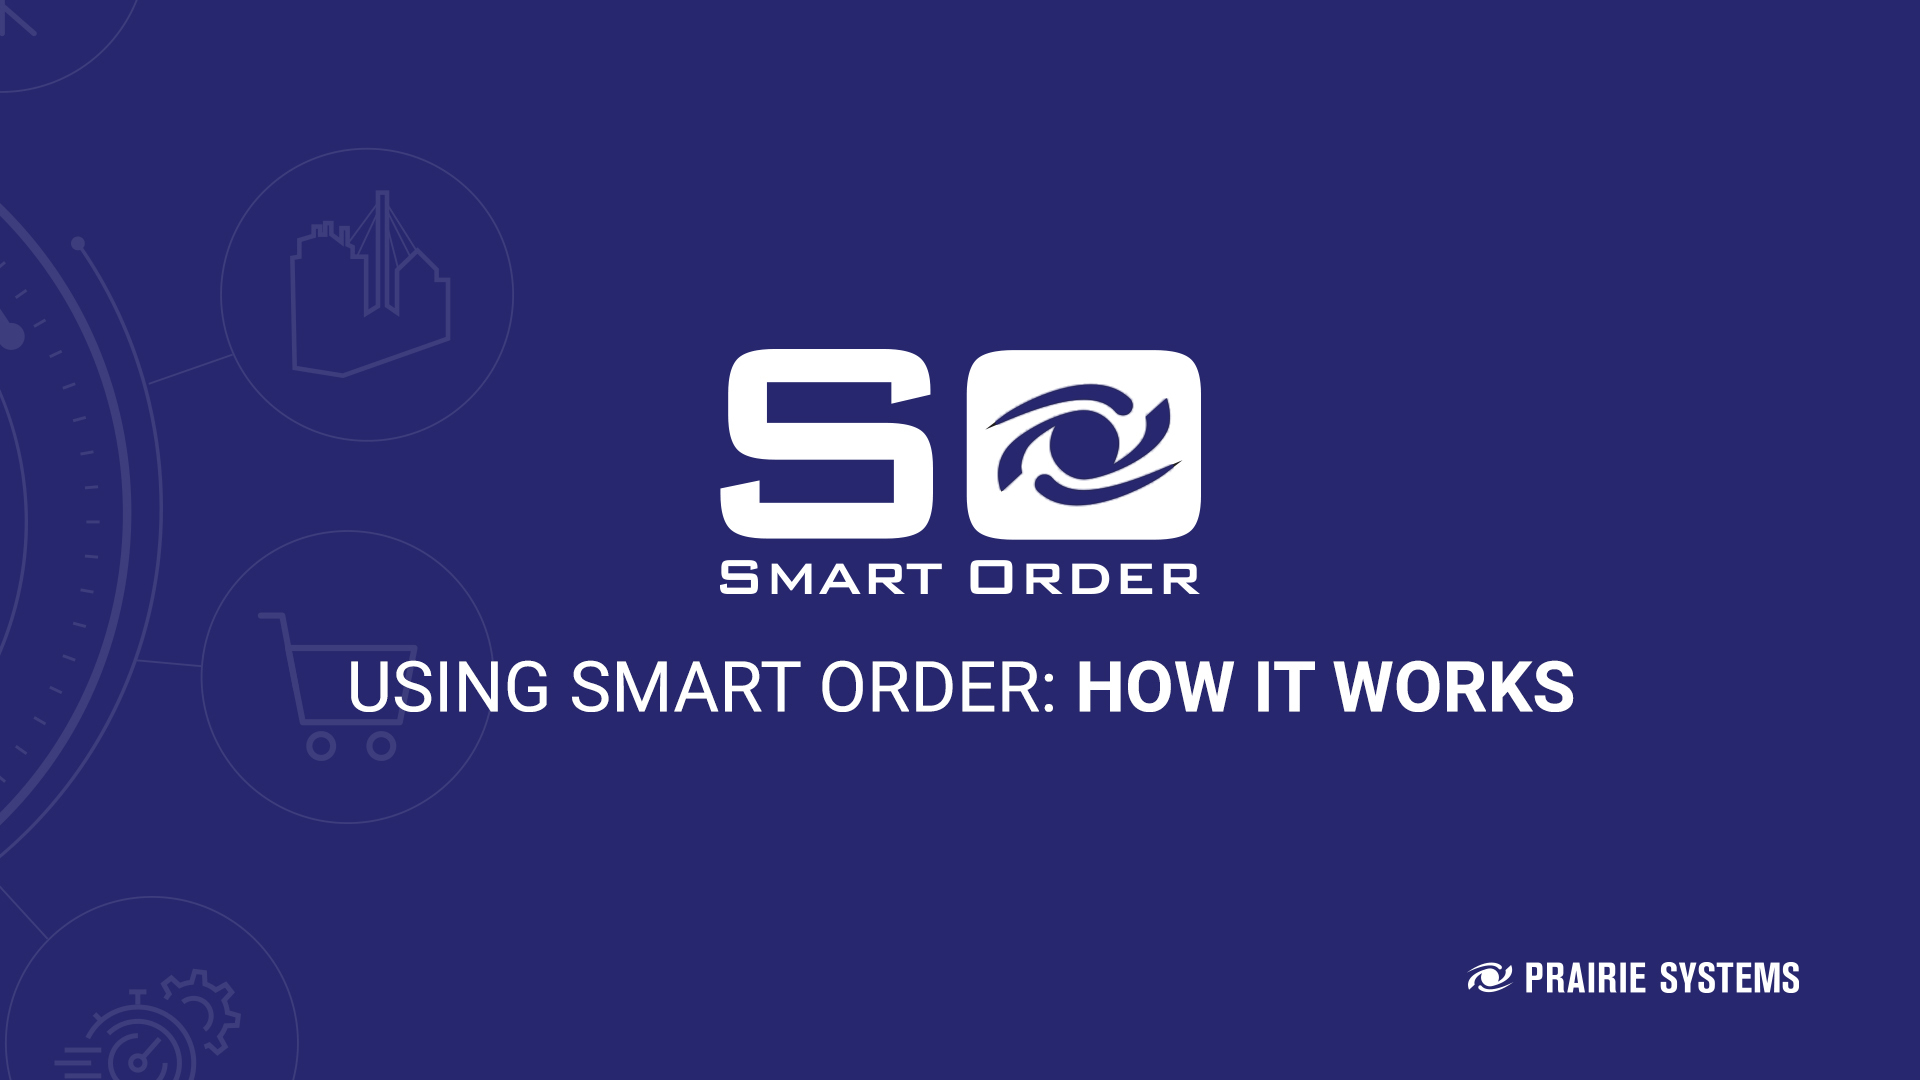 Smart order